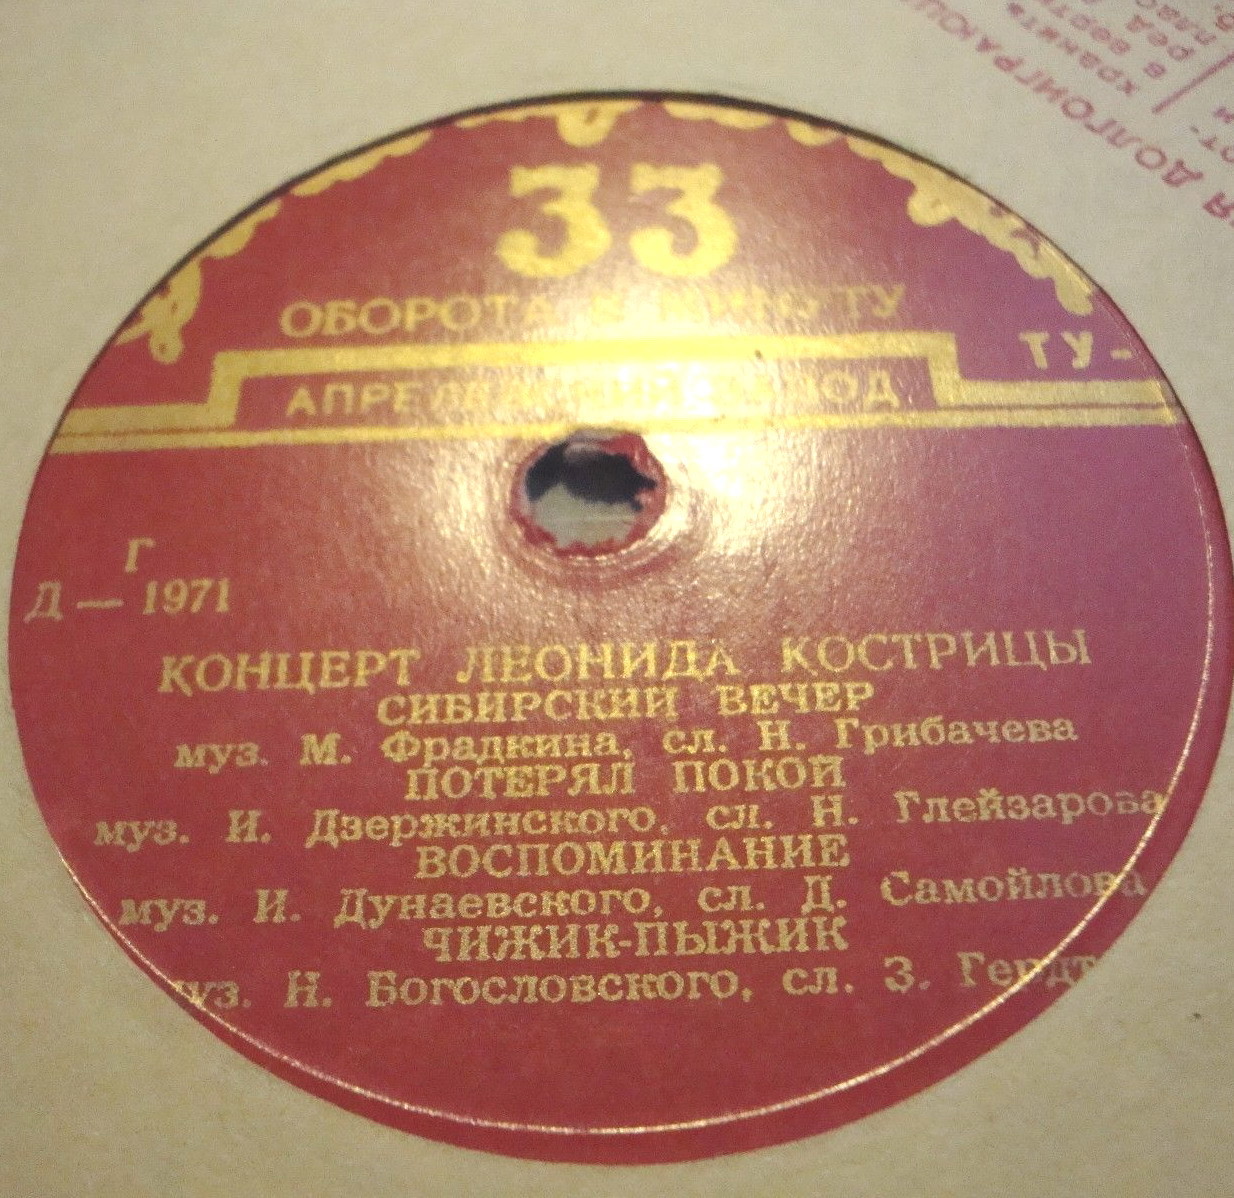 Концерт Леонида Кострицы